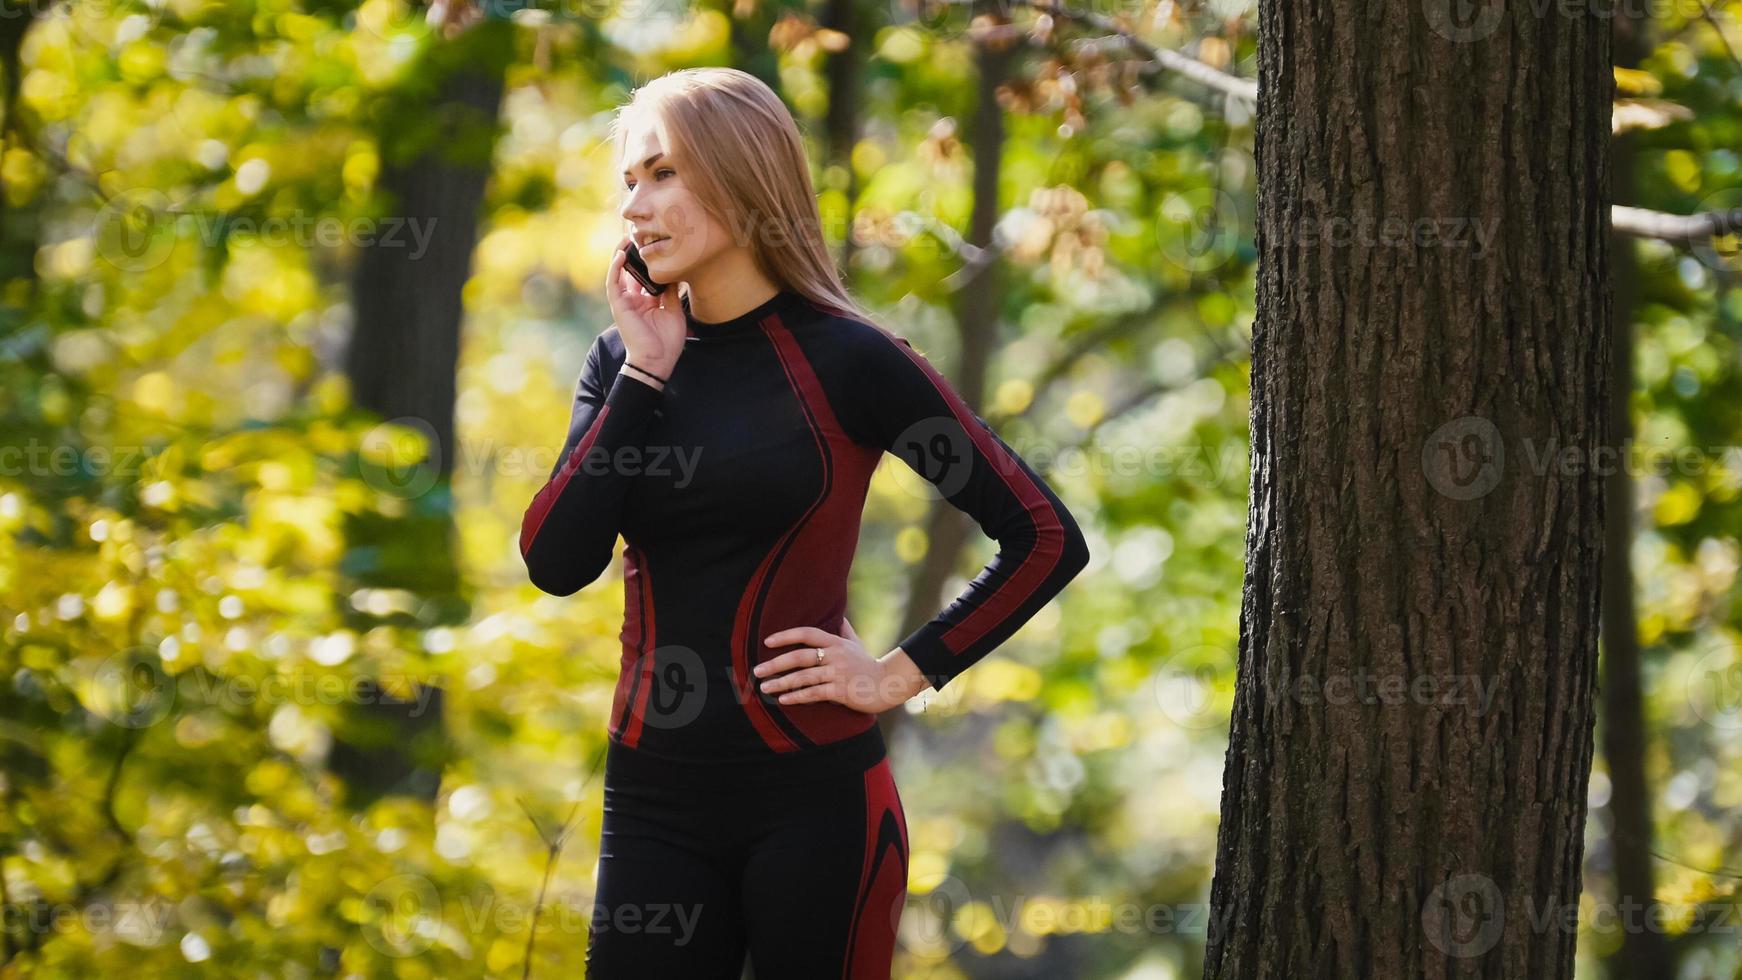 jonge, sportieve vrouw praten op mobiele telefoon in herfst park buiten, close-up foto